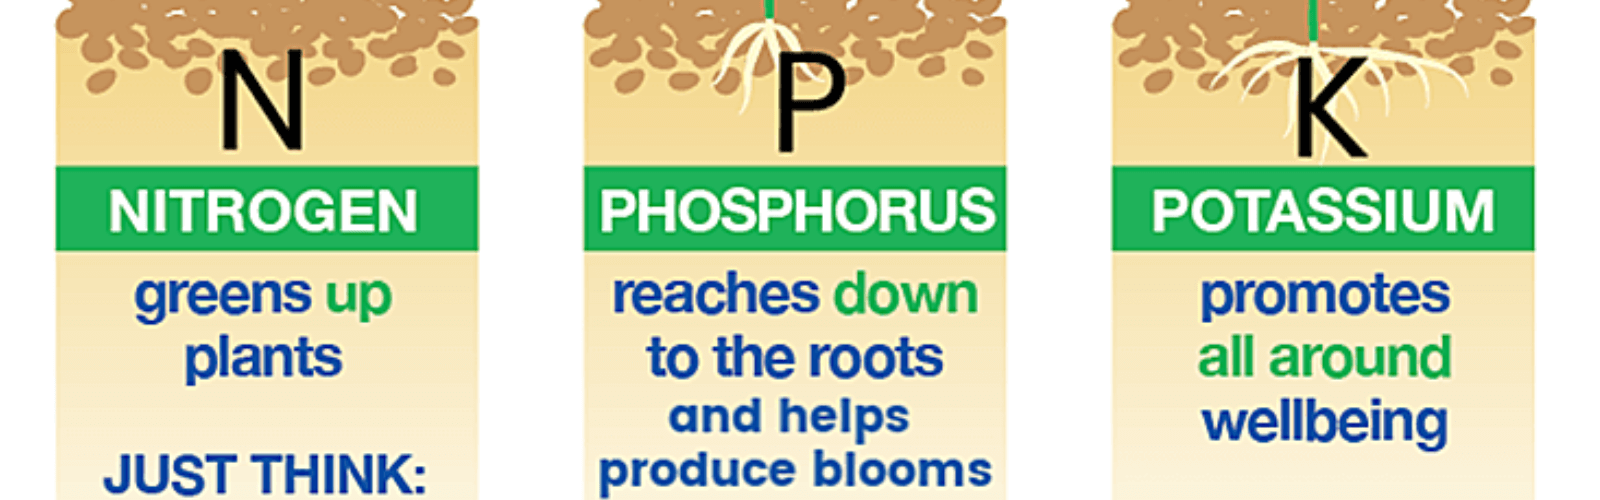 Los tres nutrientes principales para las malas hierbas son el nitrógeno, el fósforo y el potasio.